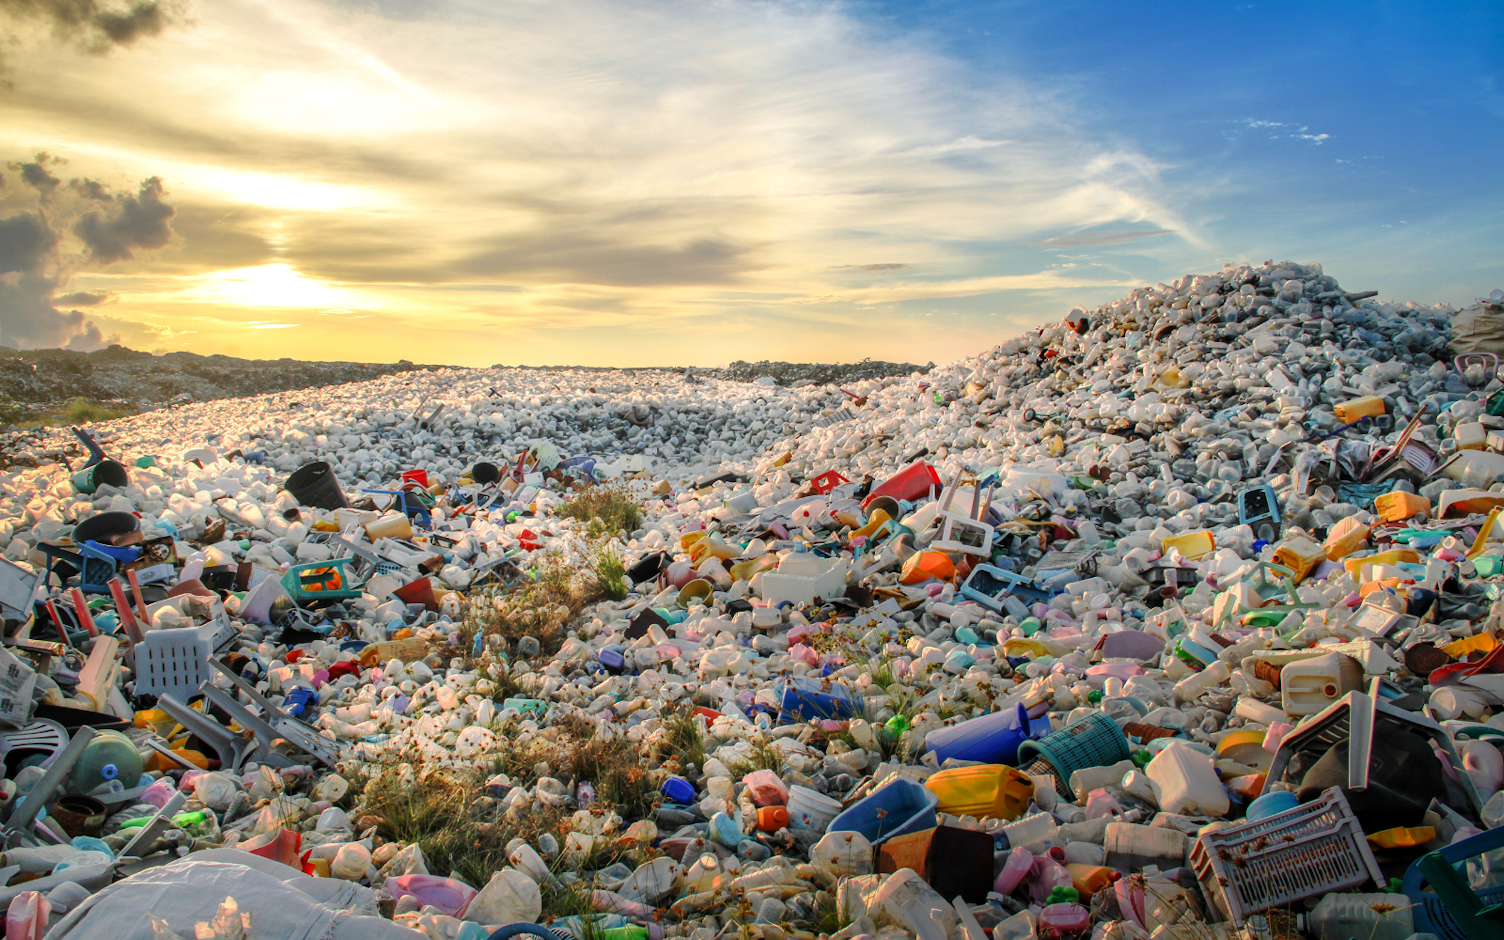 Jak powinno być zarządzane składowisko odpadów, by nie wpływało negatywnie na środowisko?